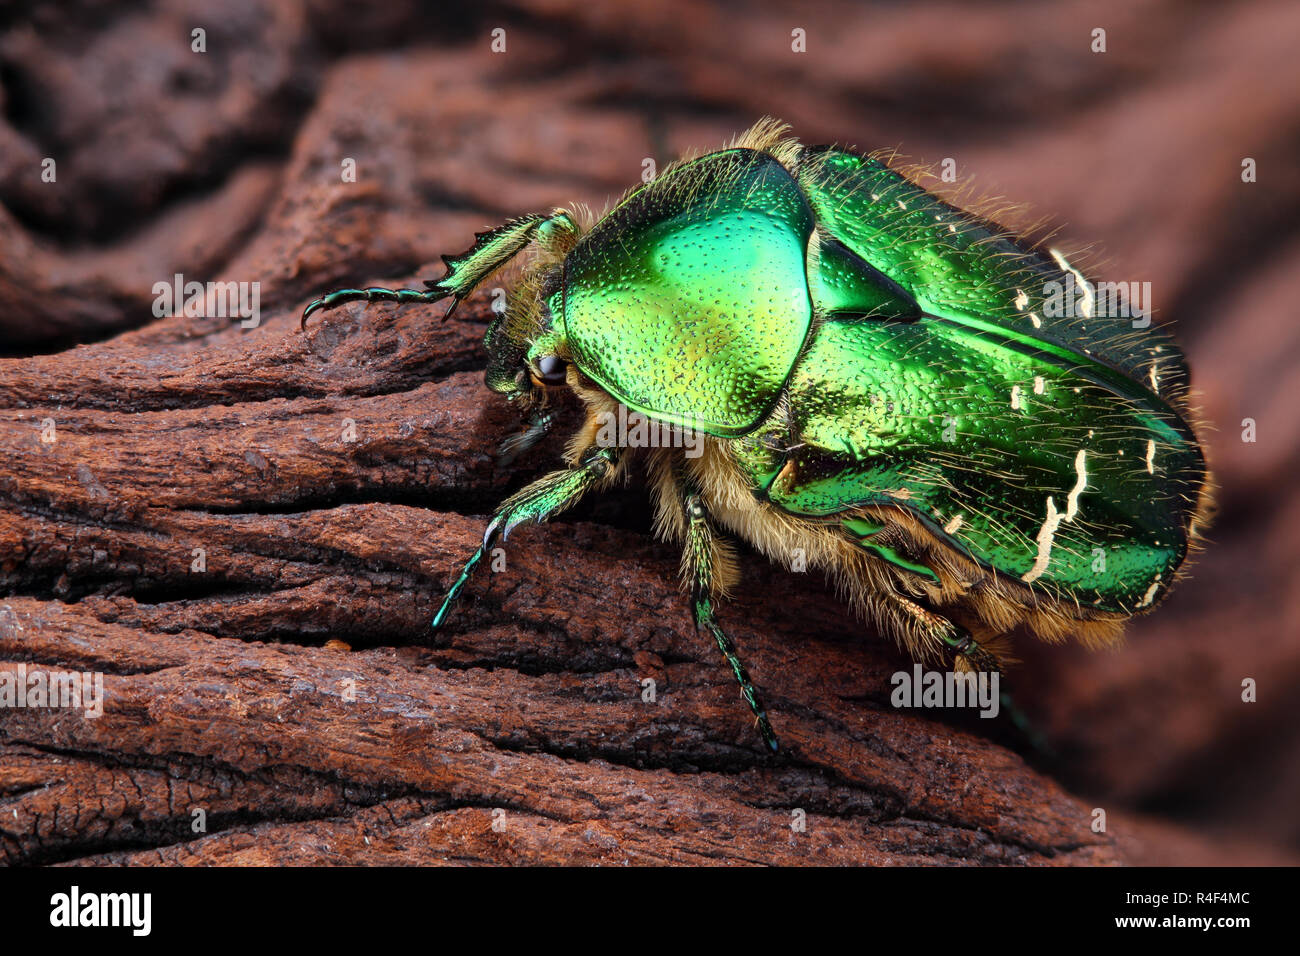 Extremadamente nítida y detallada foto de Scarabeus (Cetonia aurata) escarabajo. La imagen se apilan de muchos tiros en una imagen nítida. Foto de stock